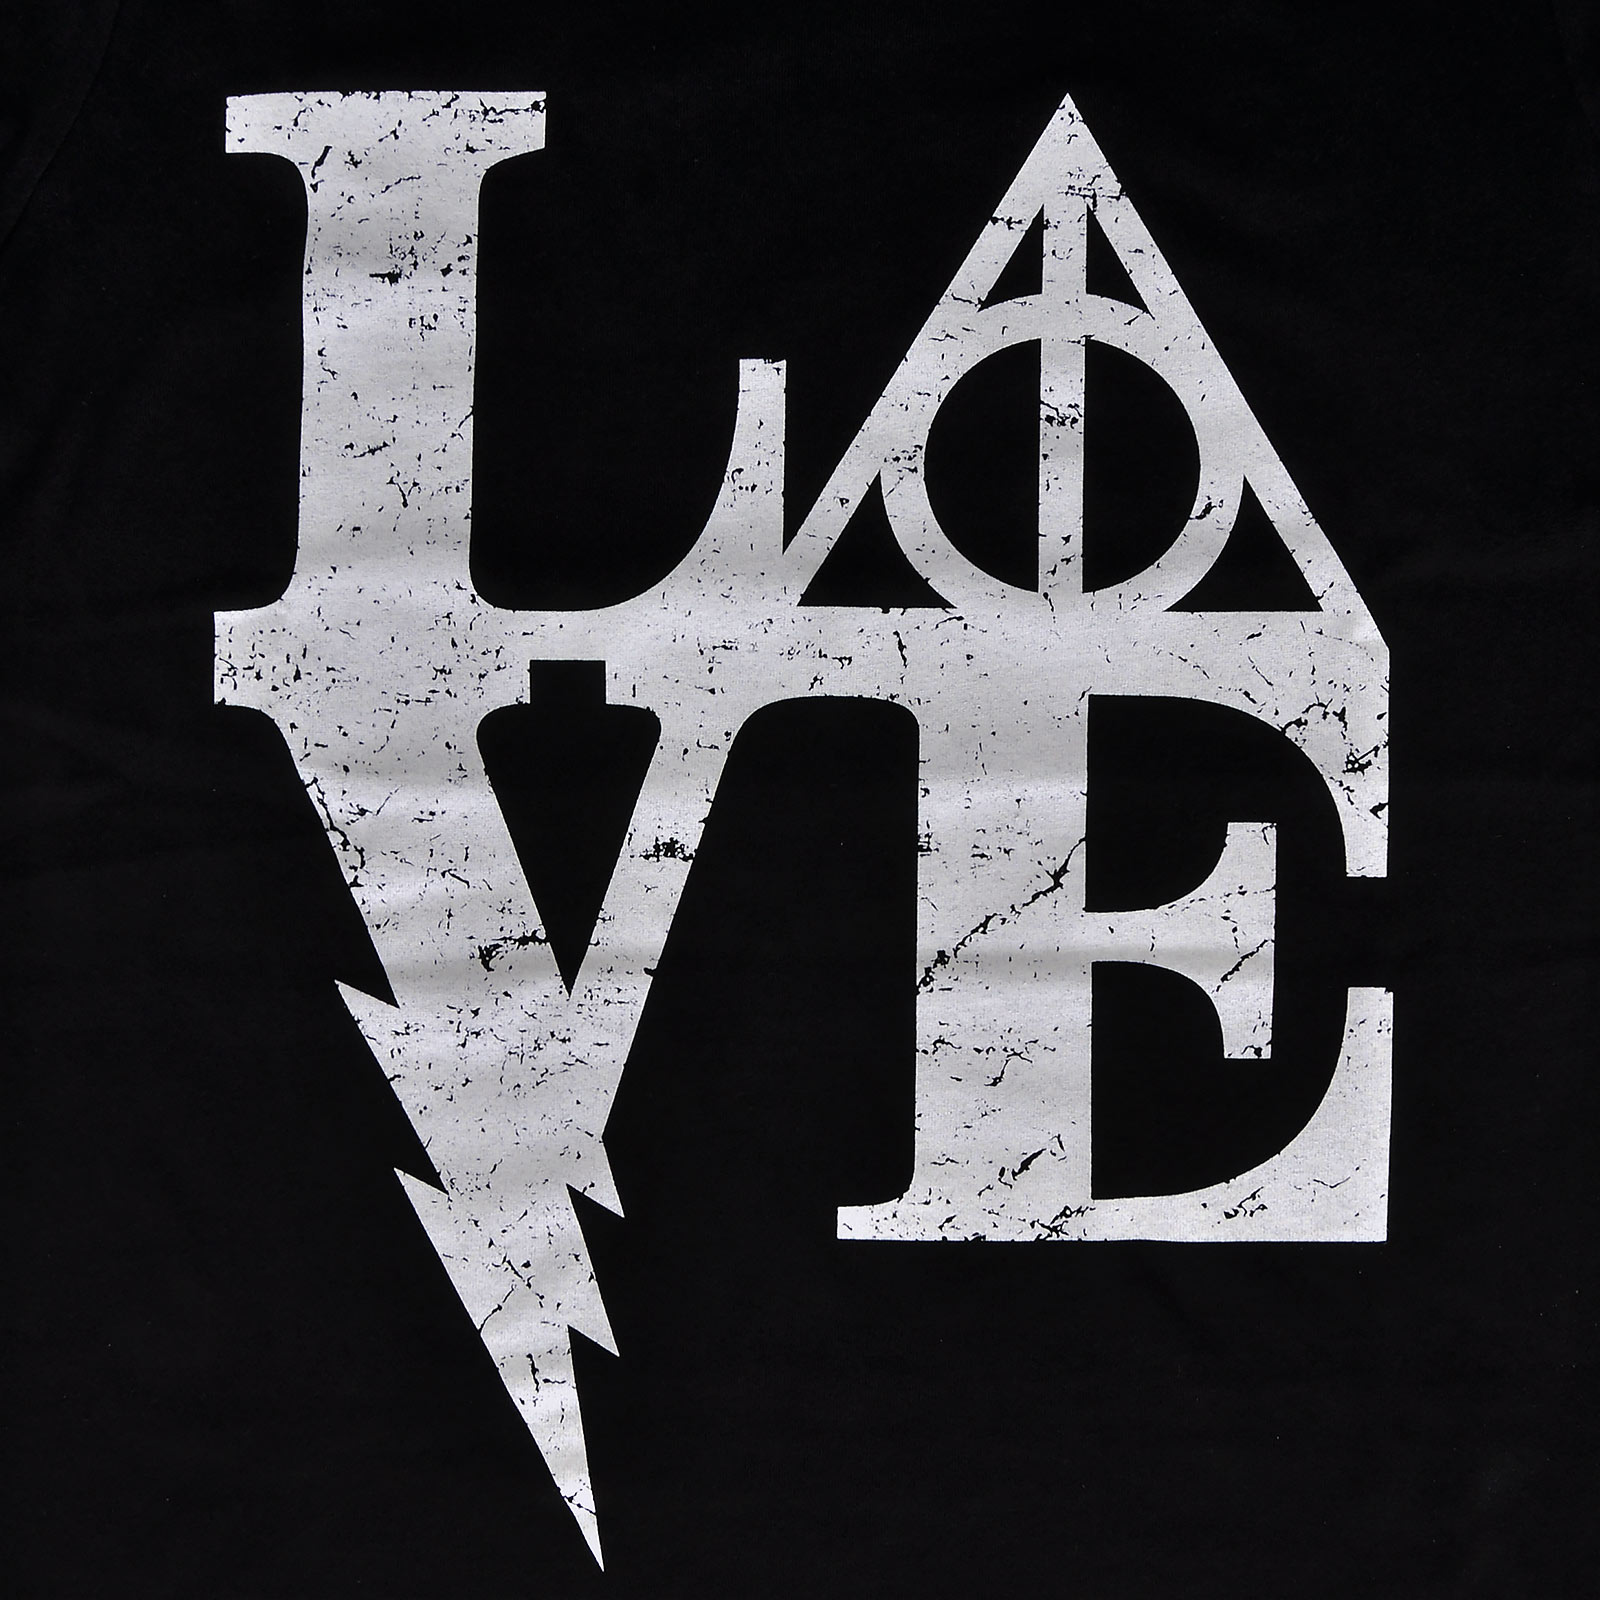 Wizarding Love T-Shirt Dames voor Harry Potter Fans